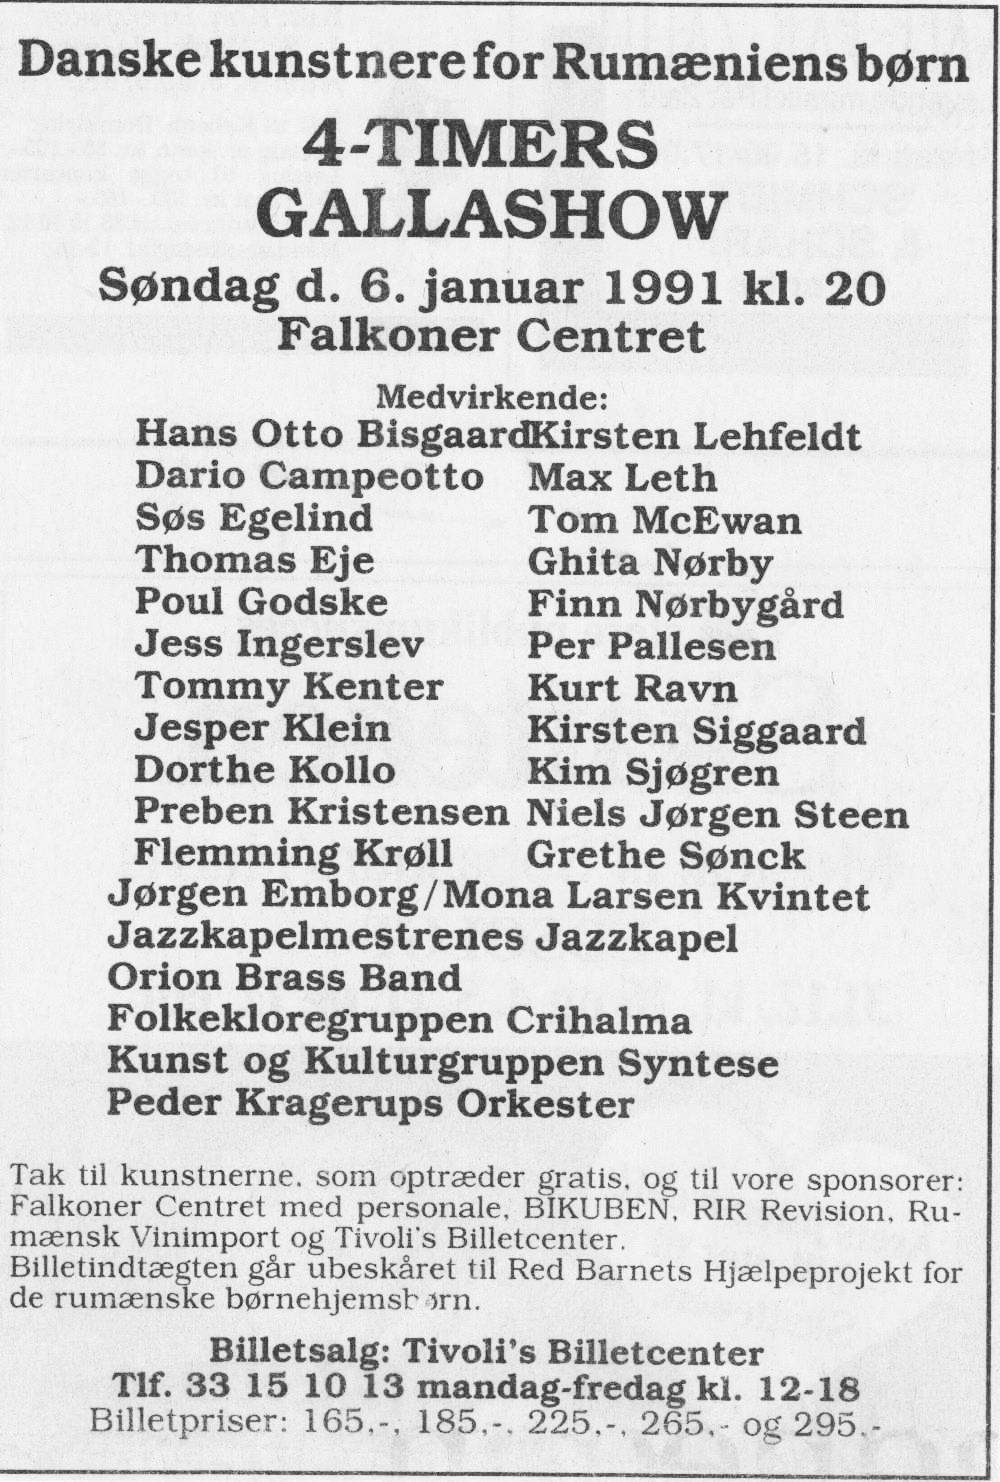 Danske kunstnere for Rumæniens børn. Annonce (4 timers gallashow. Falkonercentret 1991, København).